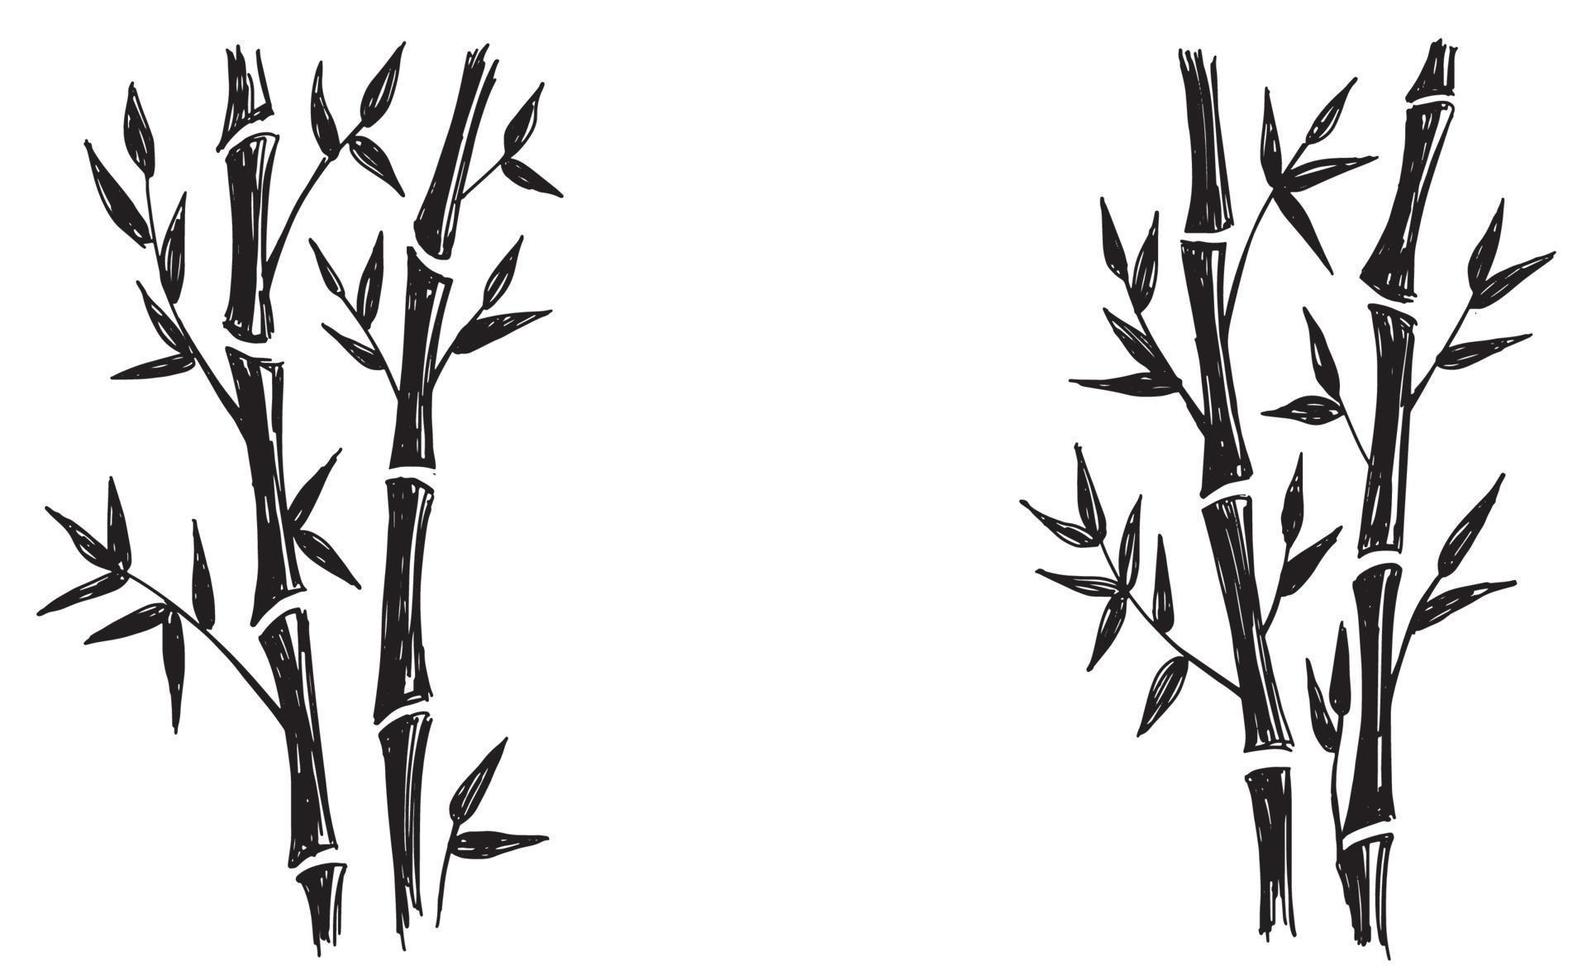 árvore de bambu. estilo desenhado à mão. ilustrações vetoriais. vetor